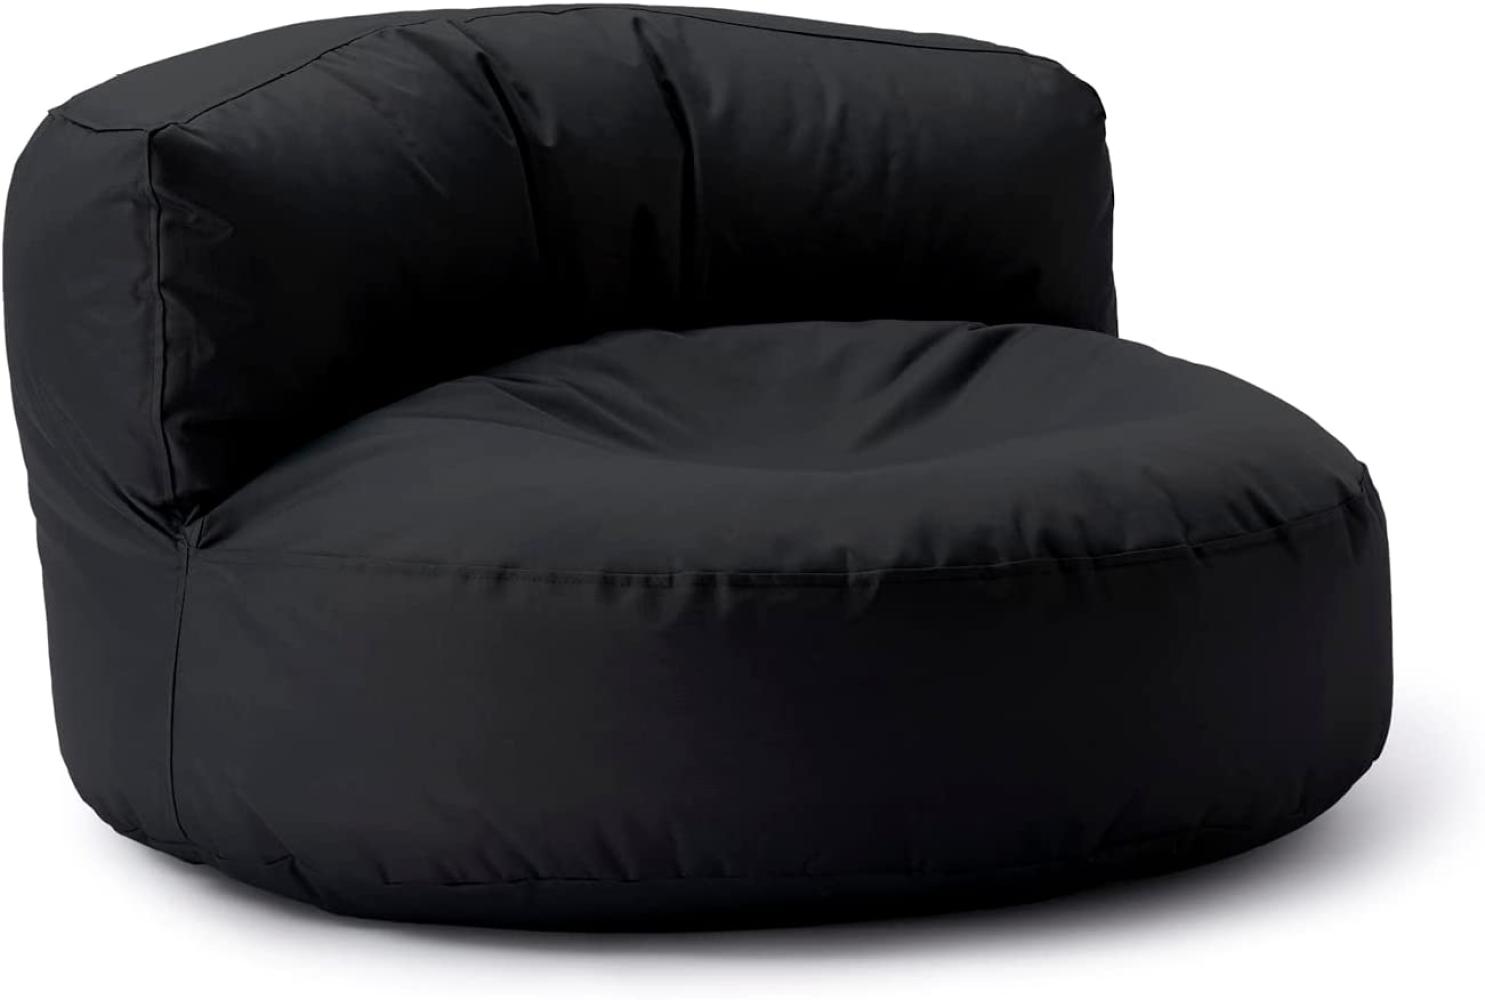 Lumaland Sitzsack-Lounge, Rundes Sitzsack-Sofa, 320l Füllung, schwarz, 50 x 50 x 90 cm Bild 1